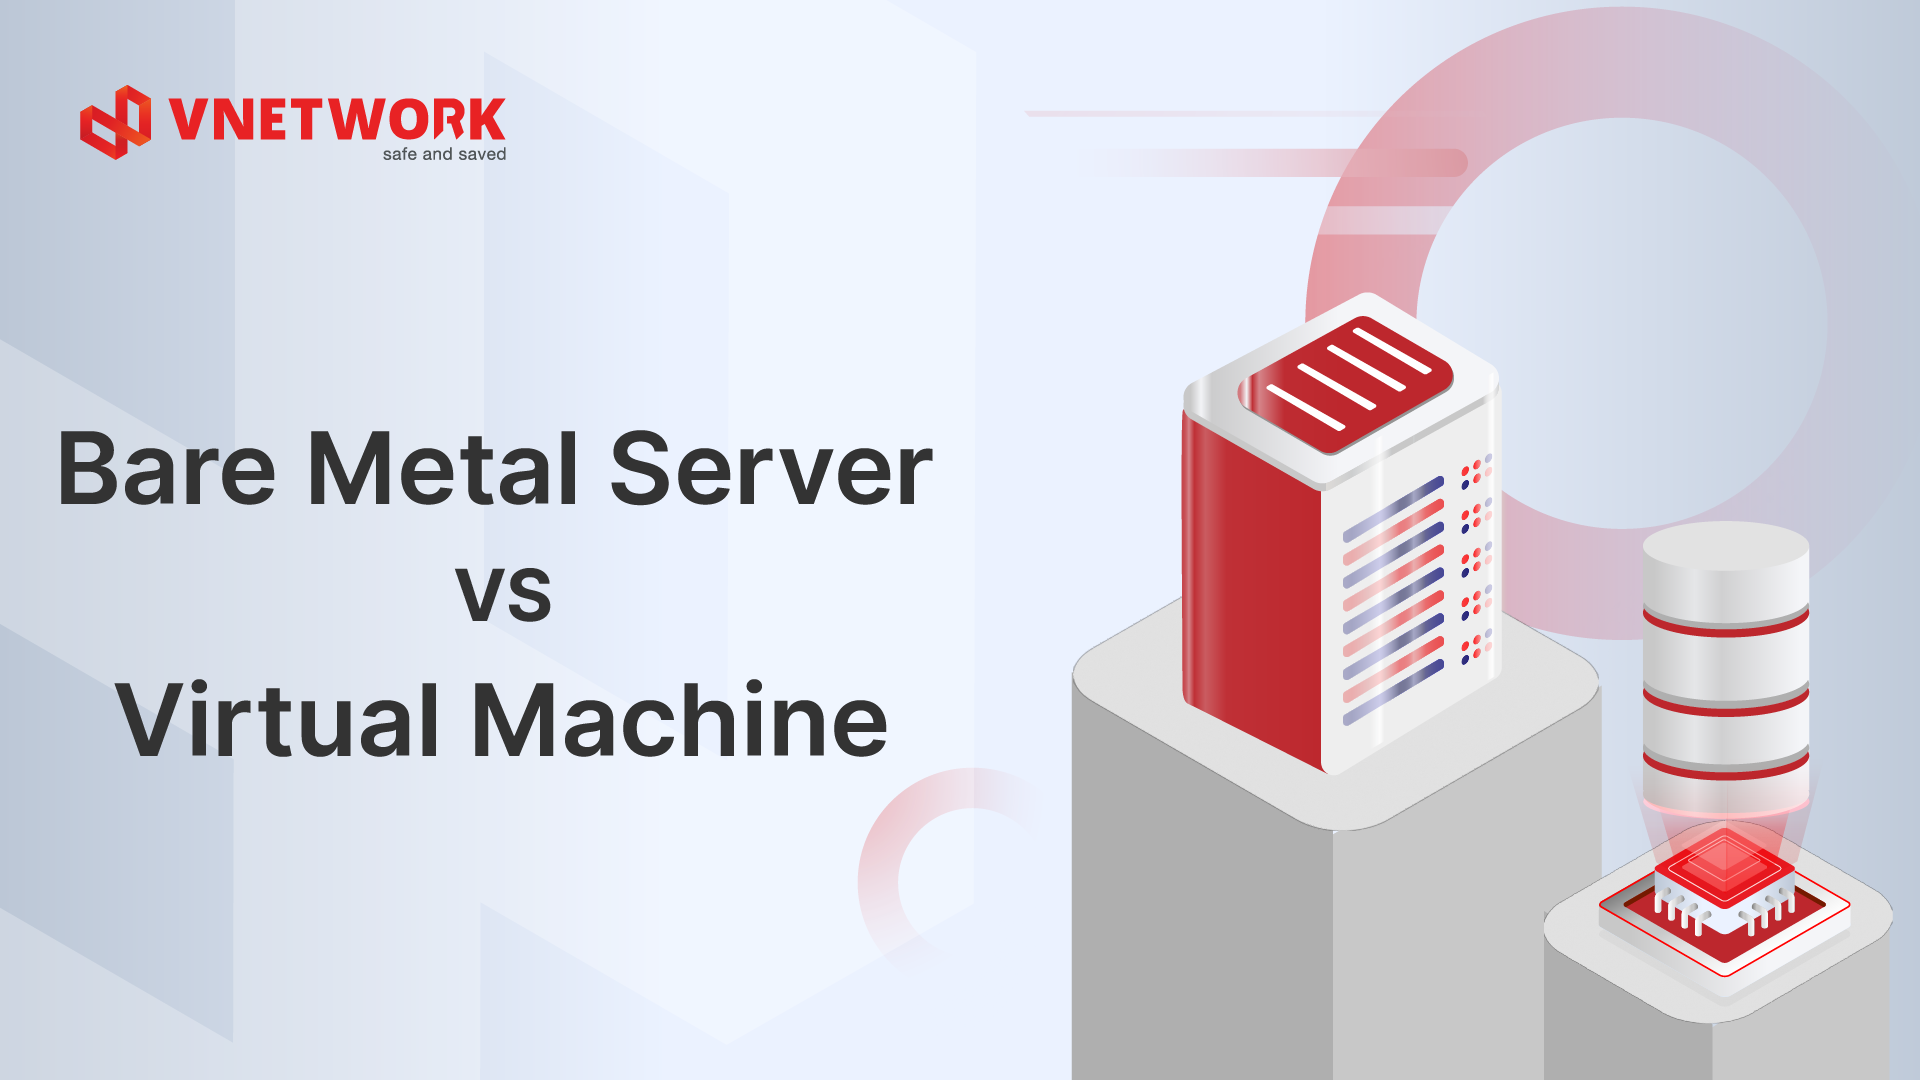  Bare Metal Server or Virtual Machine? A comparison